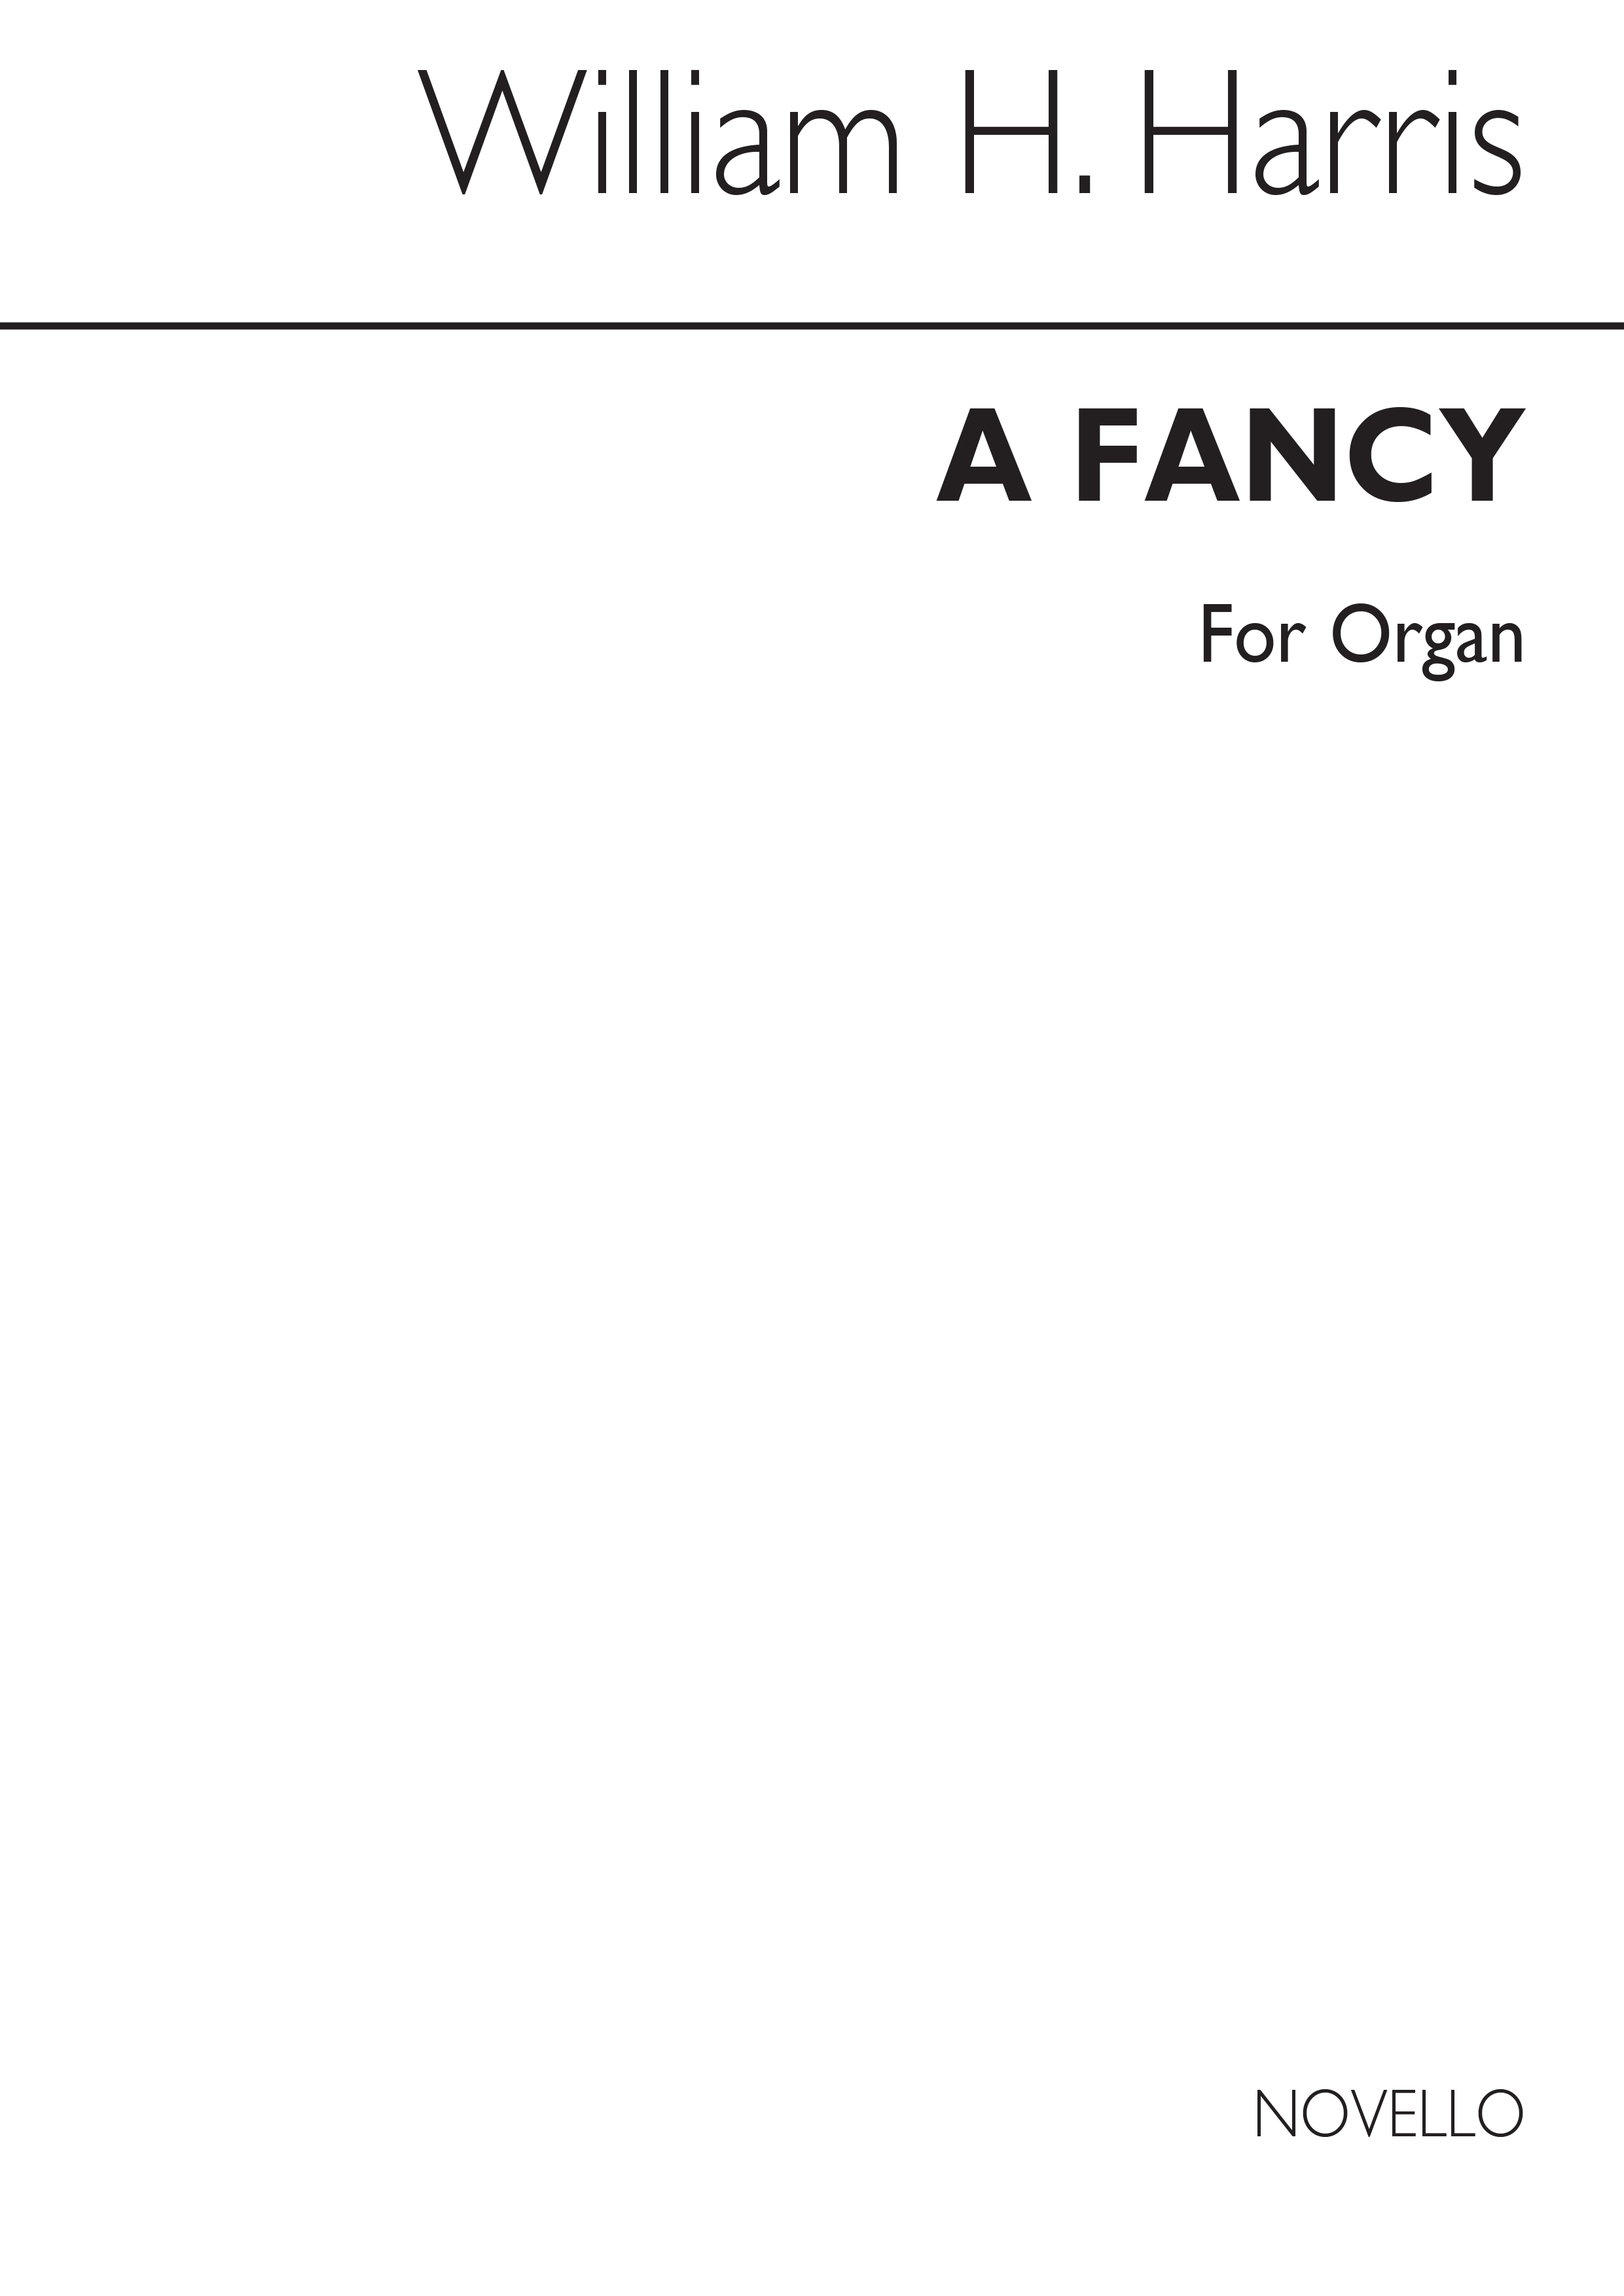 William H. Harris: A Fancy for Organ